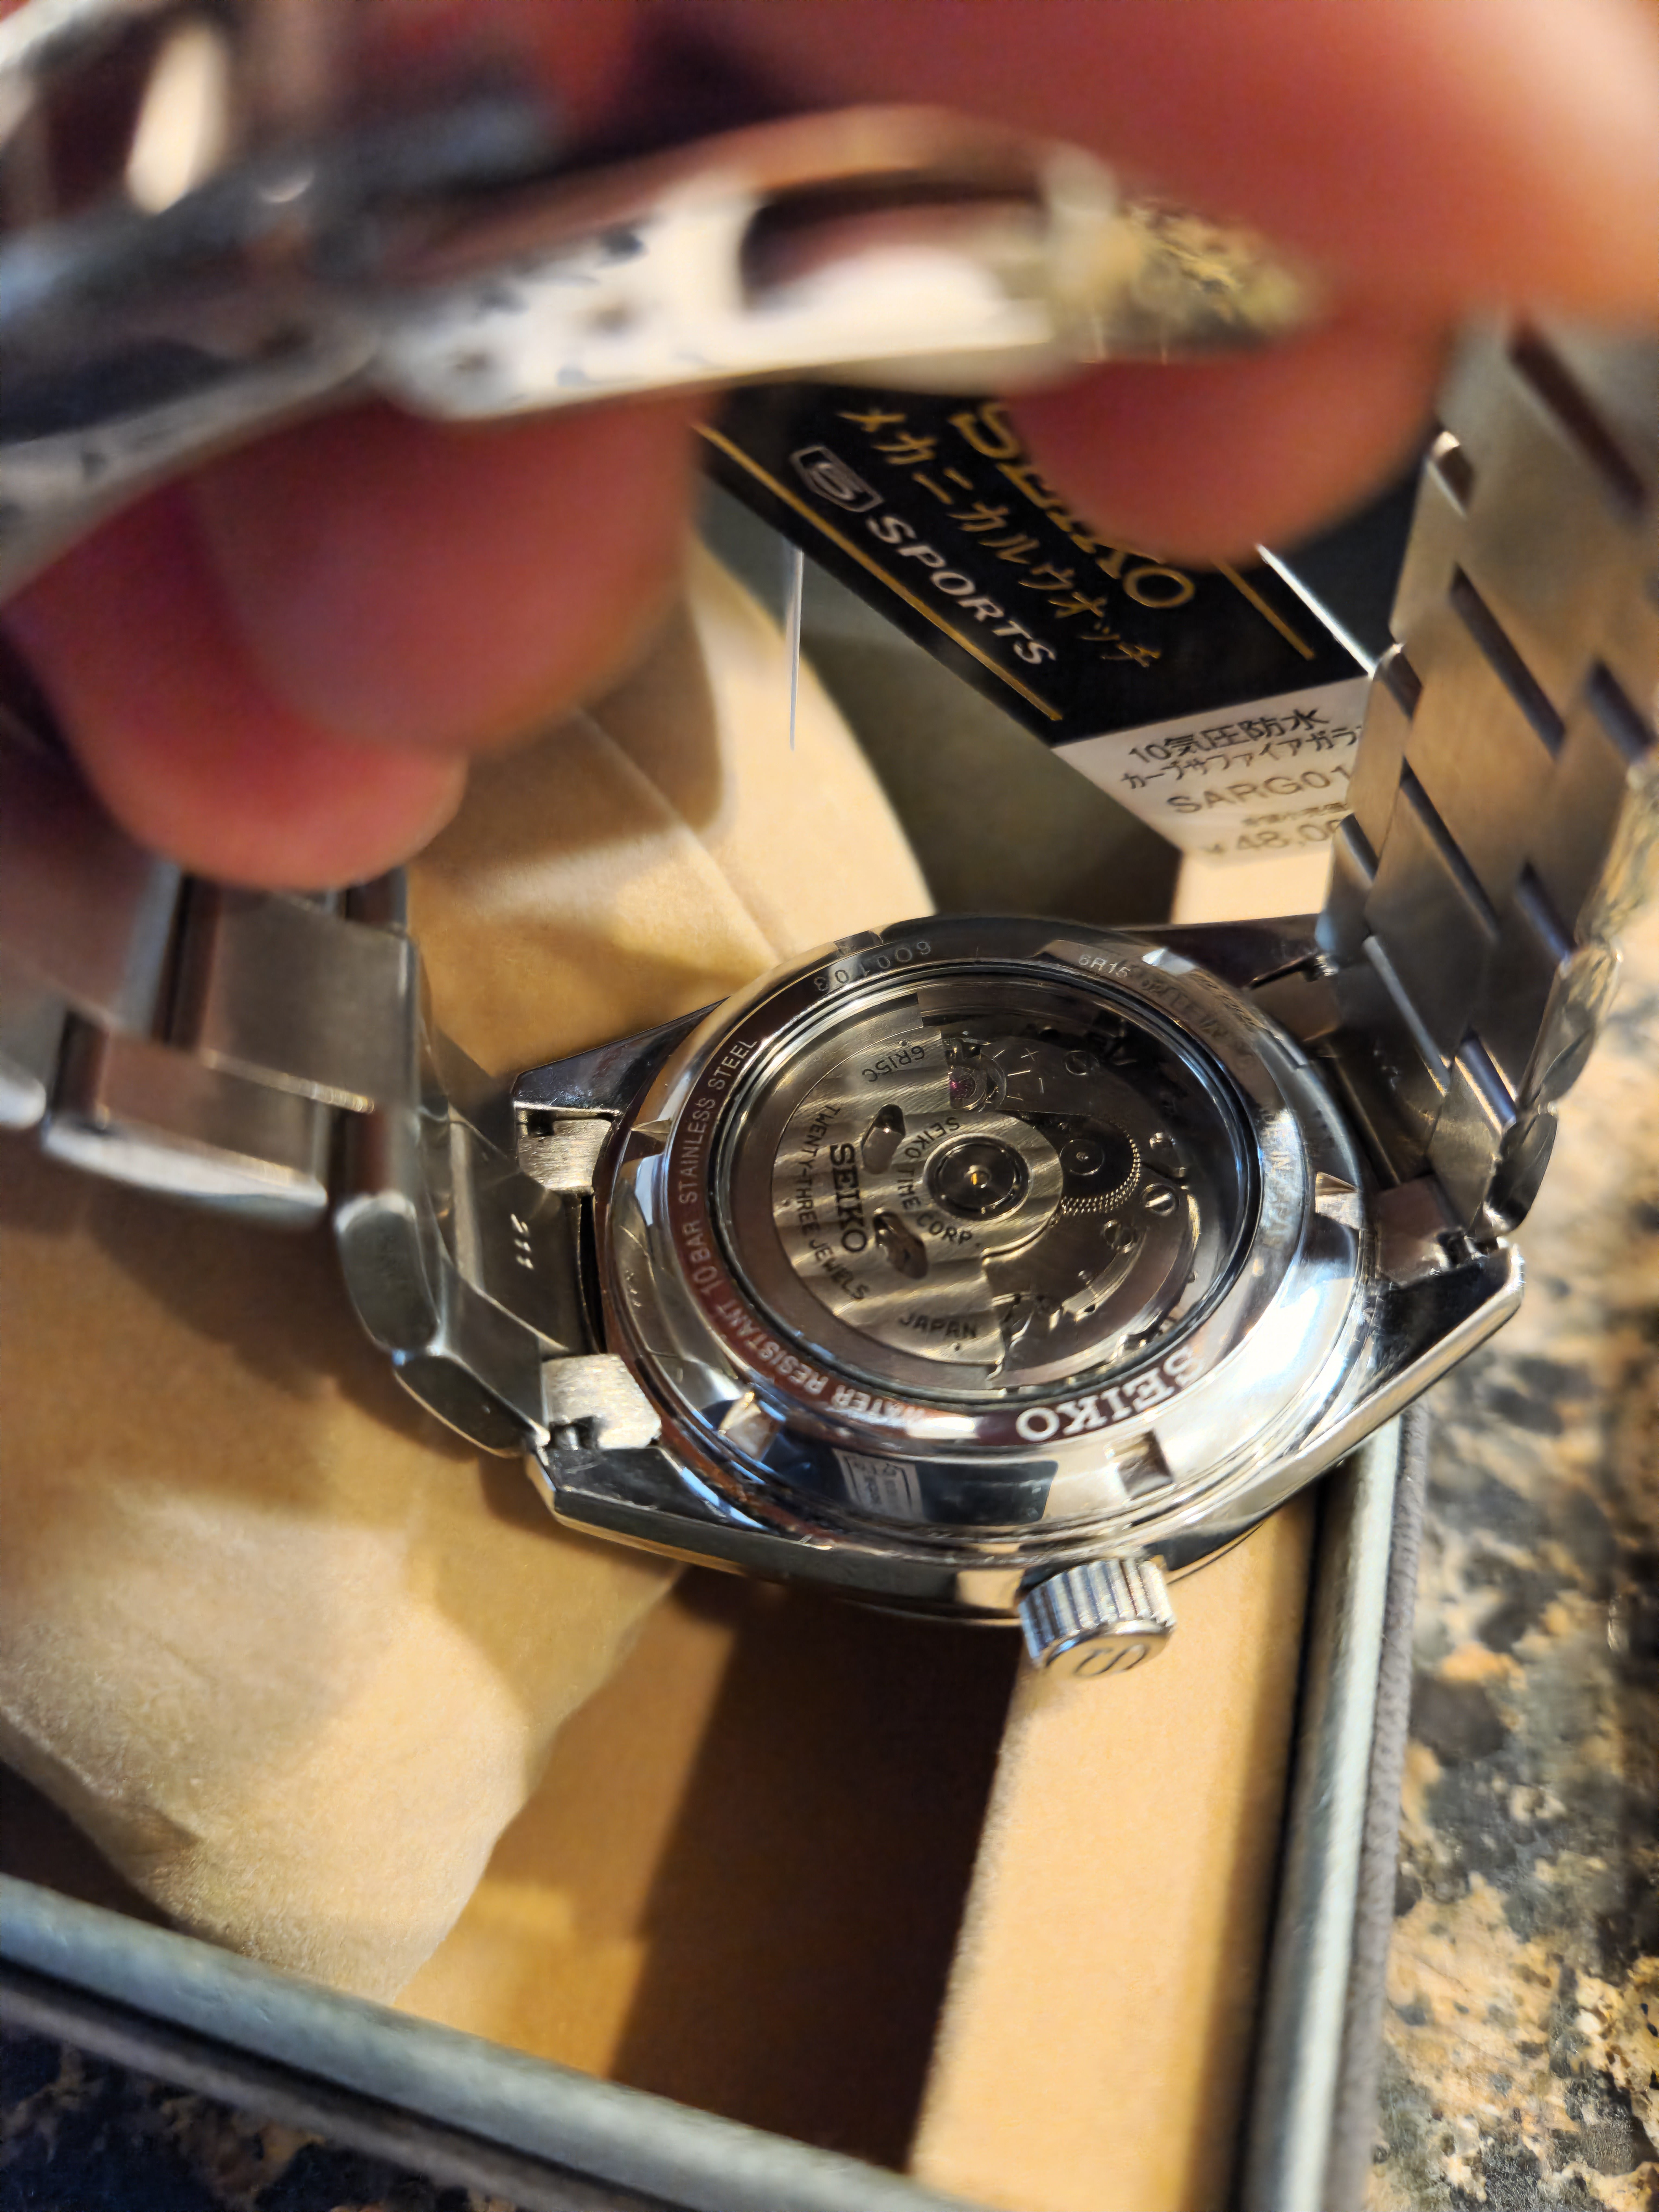 650 USD] New -Seiko SARG011 with Seiko SARG009 Bracelet & Stock Leather  Strap | WatchCharts